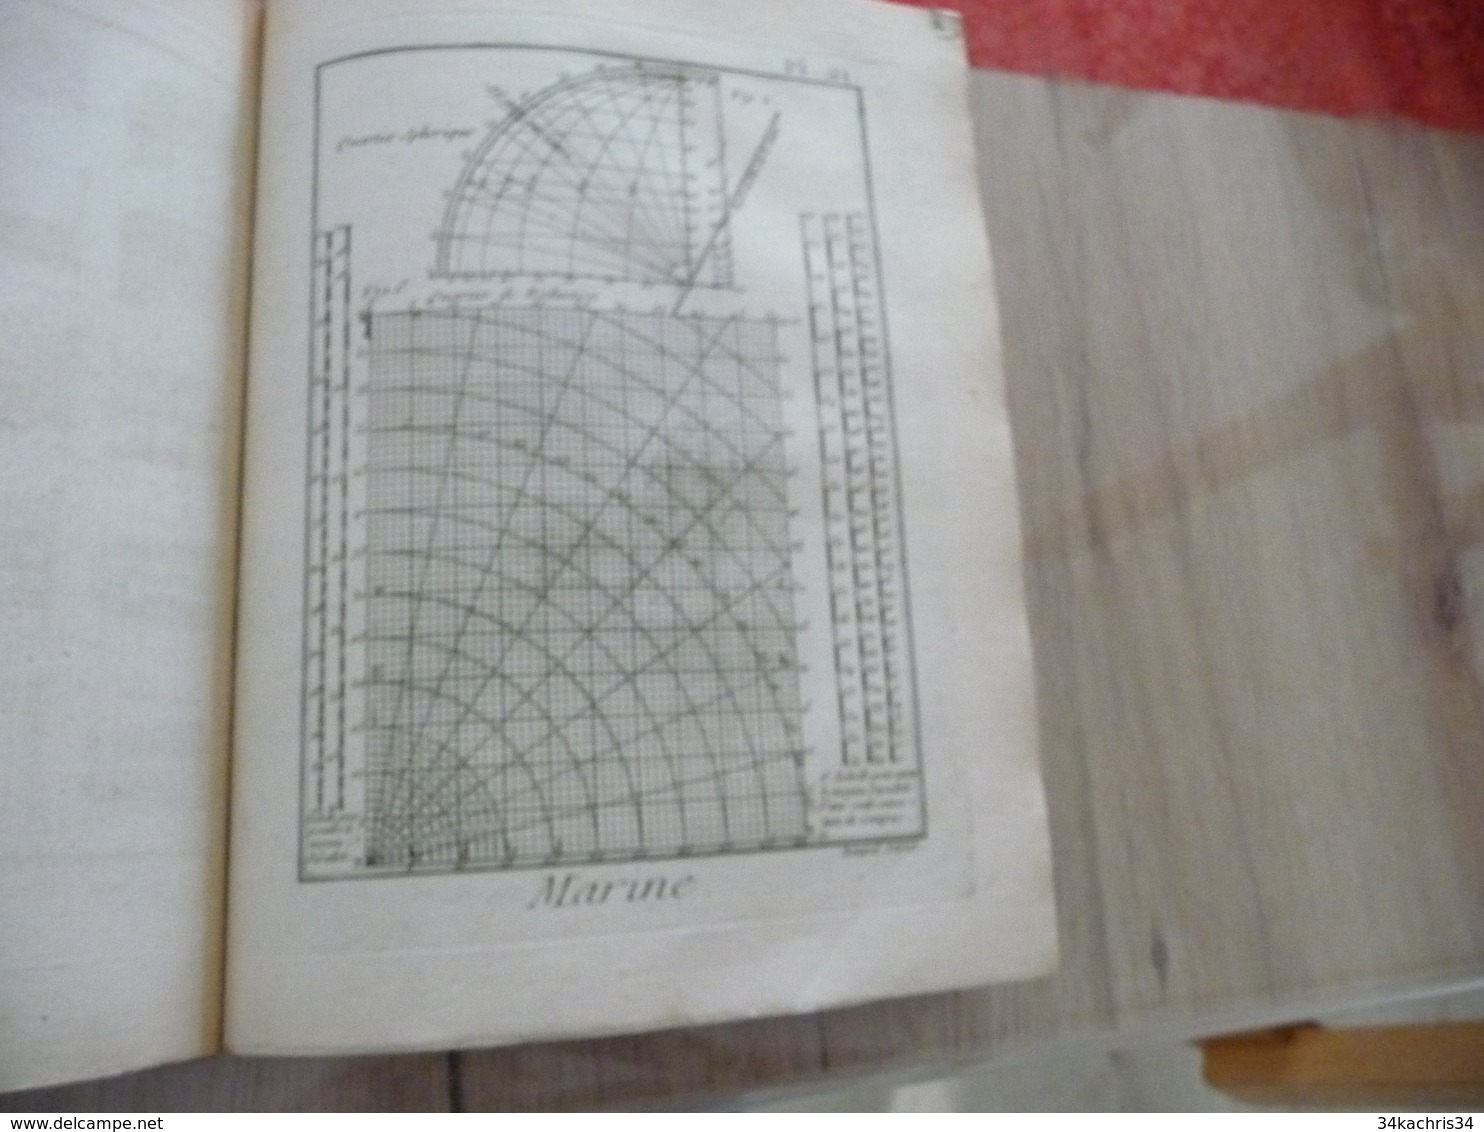 1778 Encyclopédie Diderot d'Alembert Partie Marine Texte + 44 planches dont 24 simples 16 doubles et 4 triples